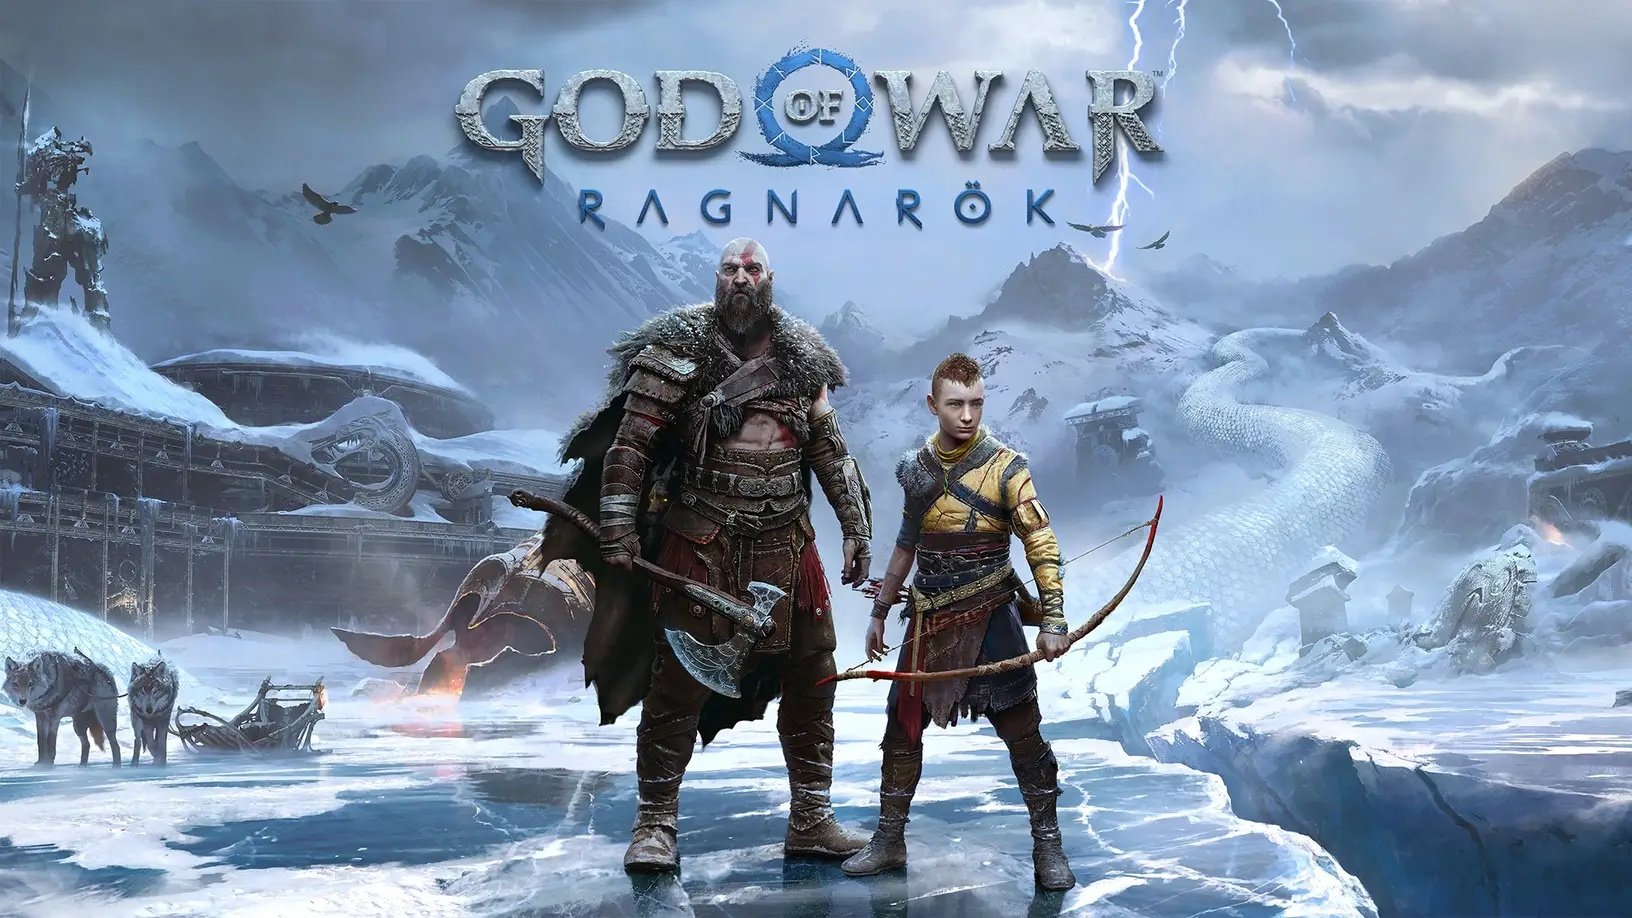 mumlende Bungalow Også God Of War Ragnarok Resolution/Frame Rate Confirmed For PS5